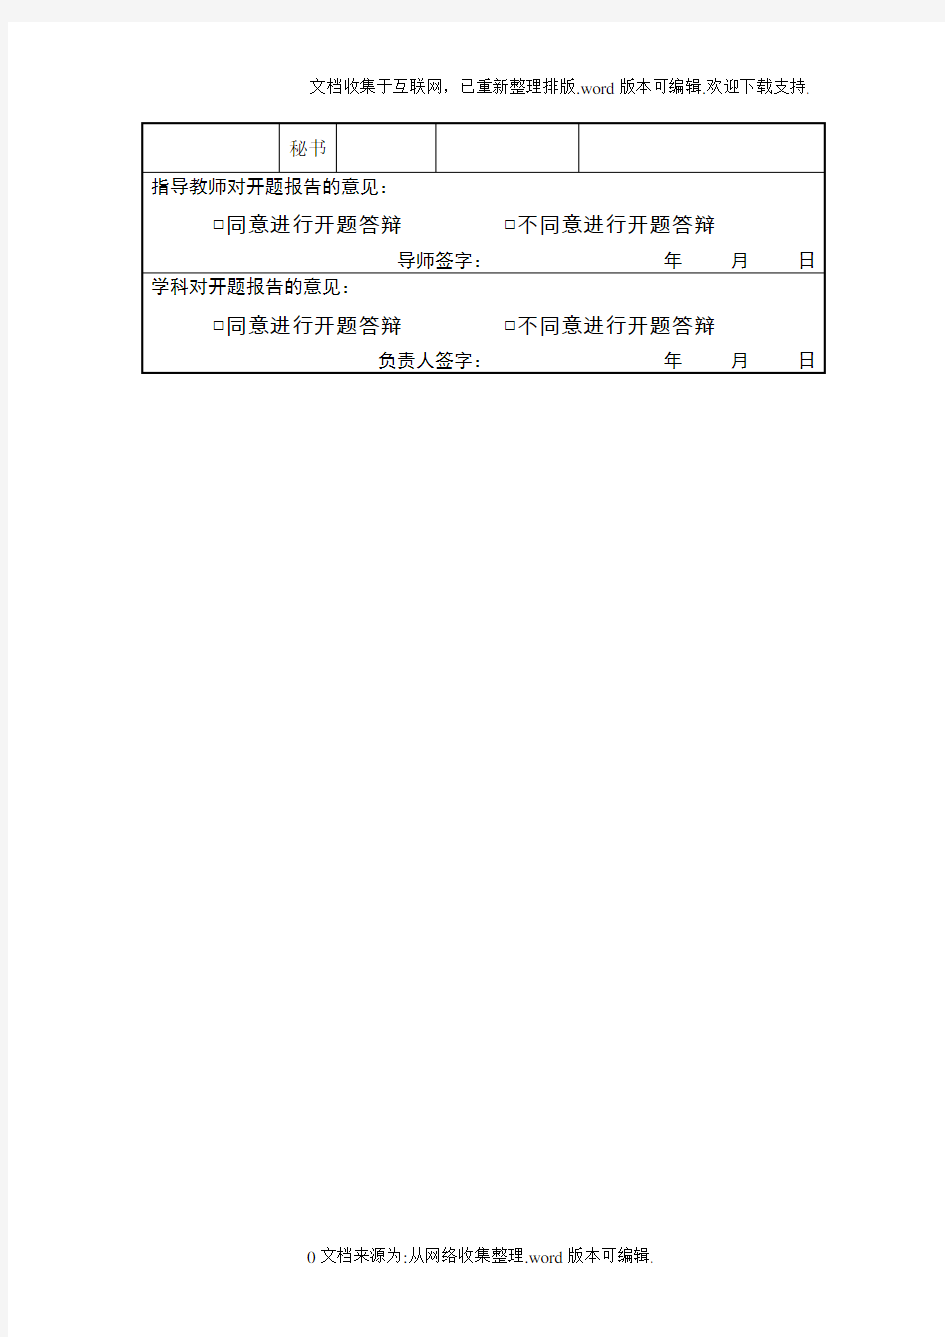 燕山大学研究生开题报告(专业学位研究生适用)-(1)